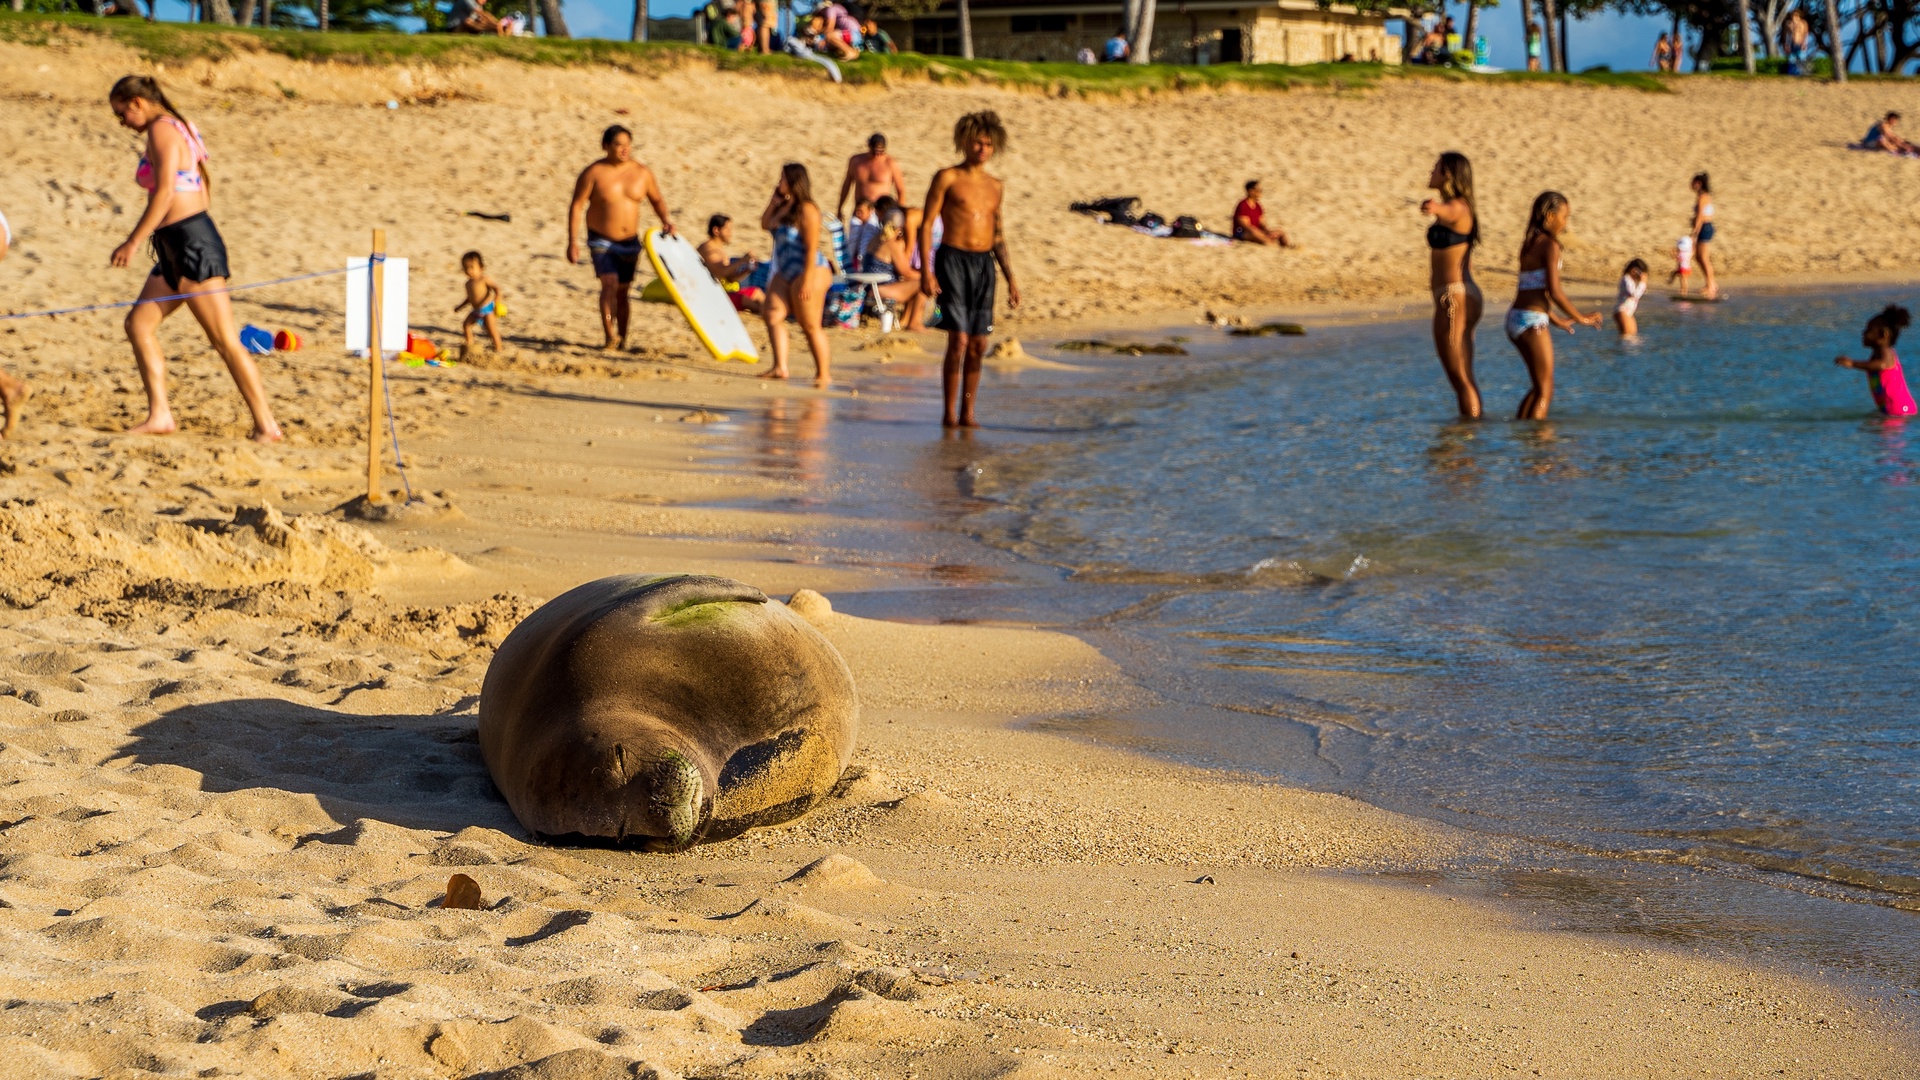 Kapolei Vacation Rentals, Kai Lani 16C - Hawaiian wildlife taking a nap on the shore.